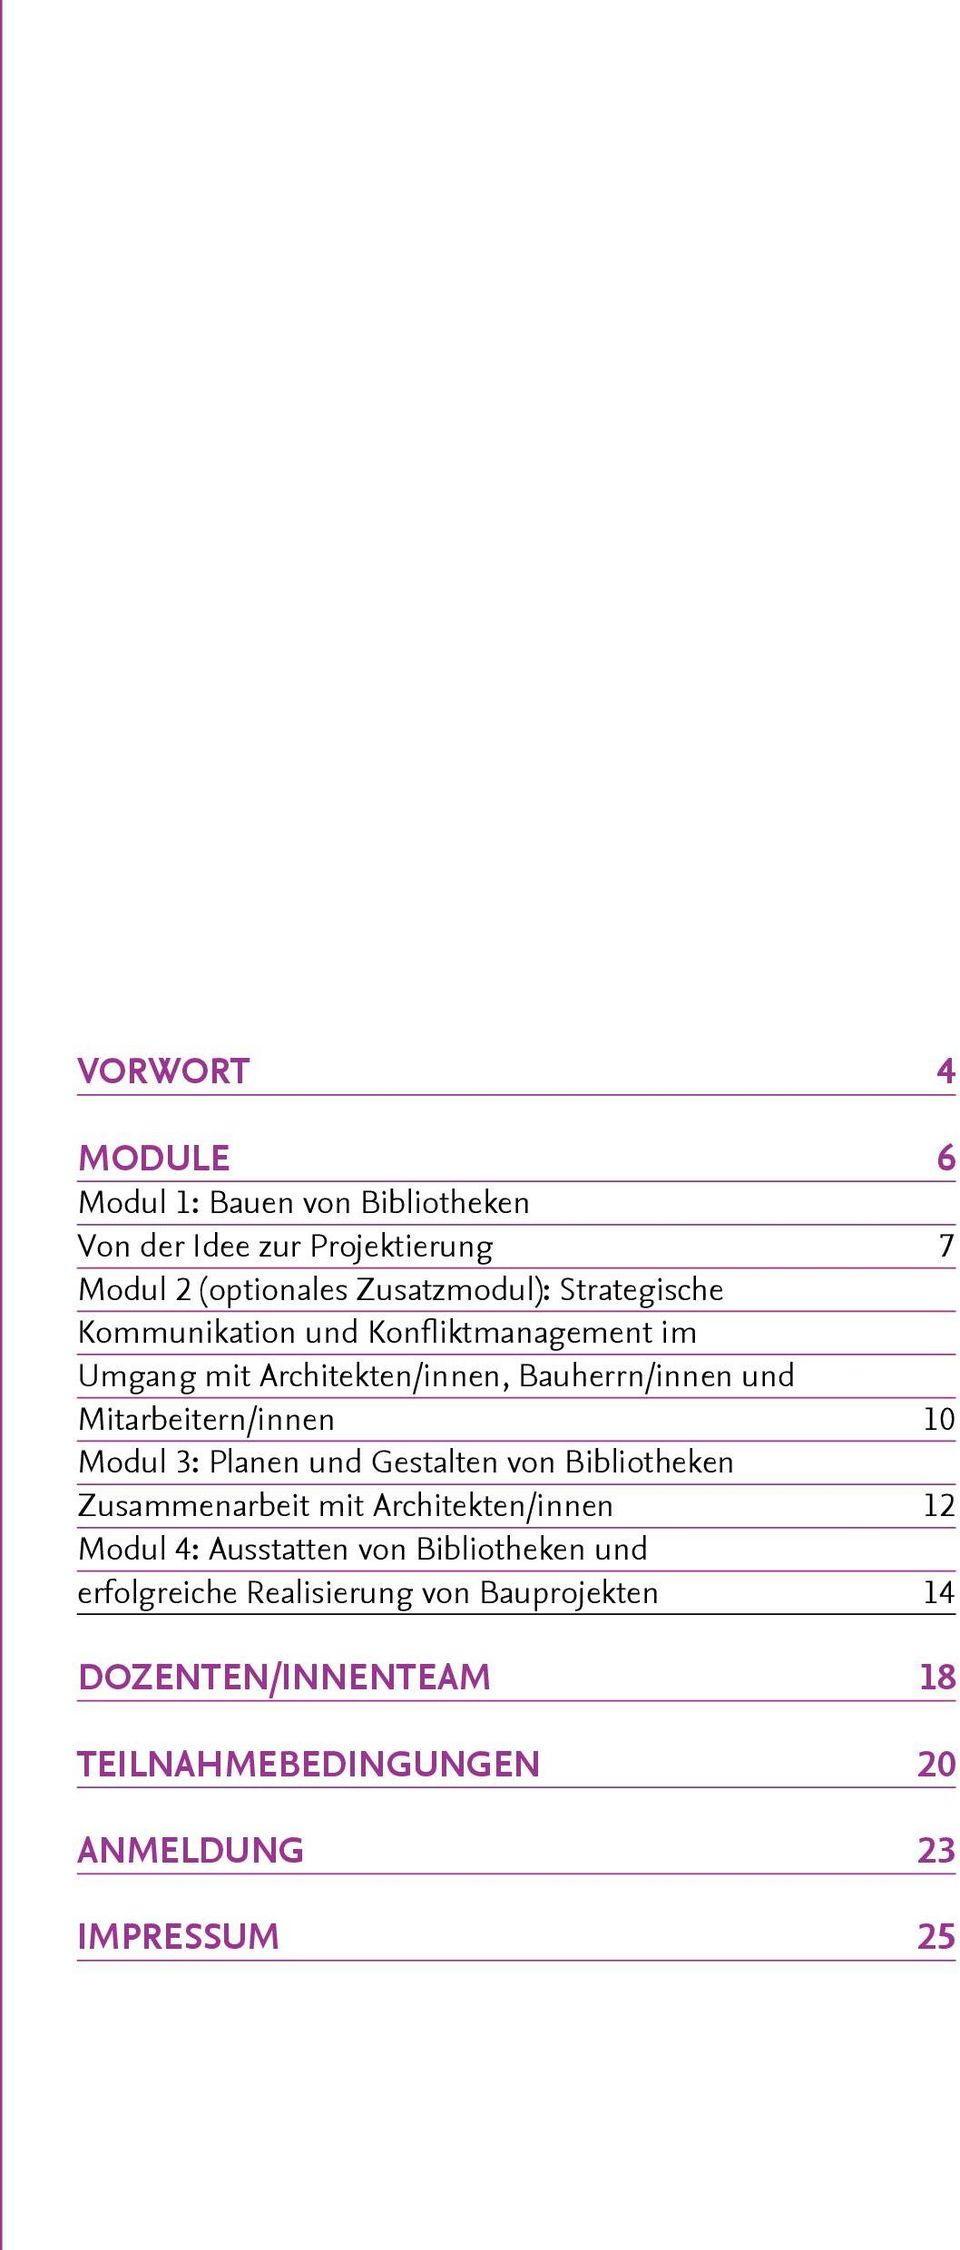 10 Modul 3: Planen und Gestalten von Bibliotheken Zusammenarbeit mit Architekten/innen 12 Modul 4: Ausstatten von